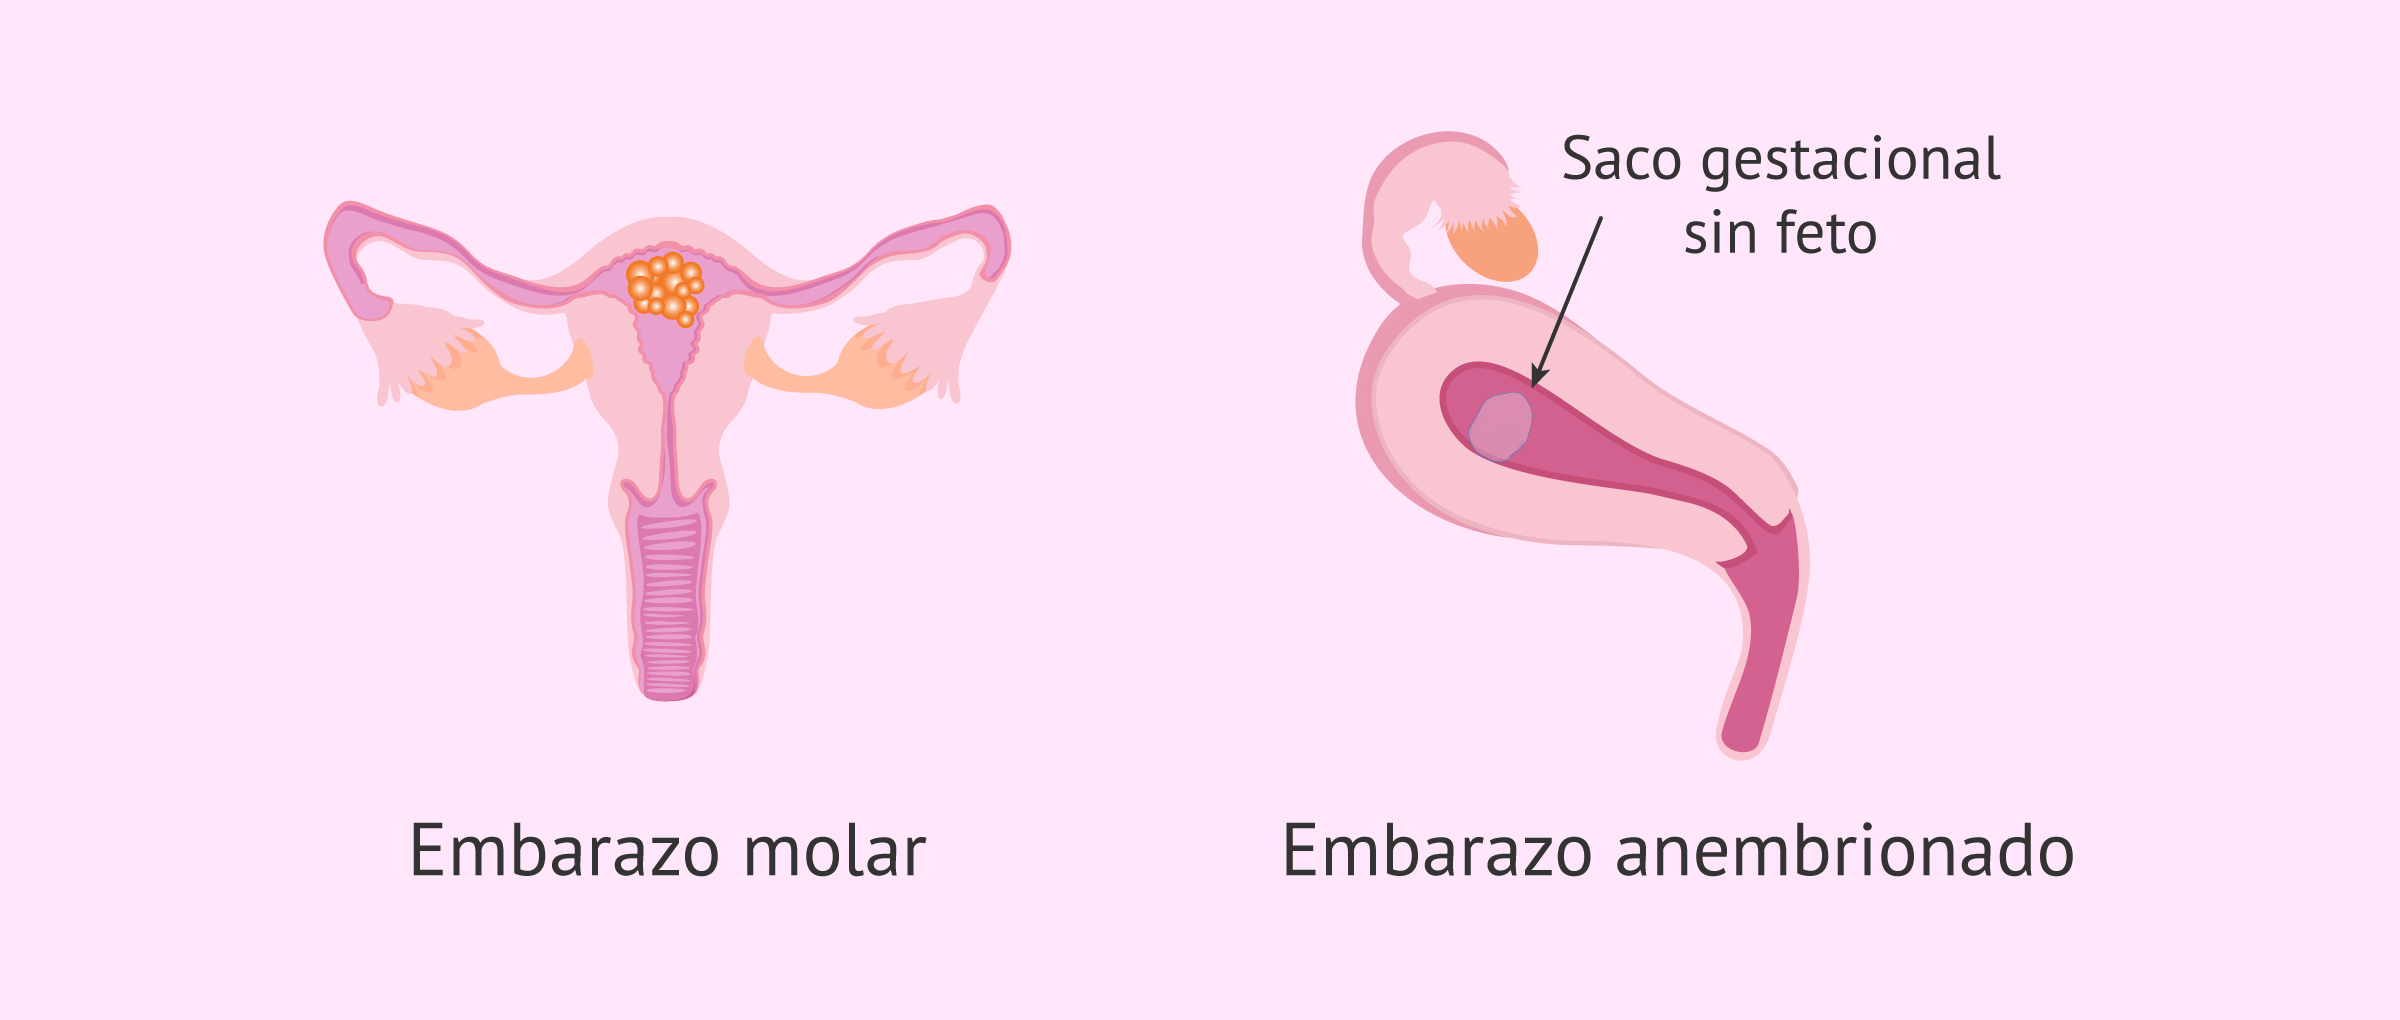 ¿Cómo se distingue un embarazo molar y anembrionario?